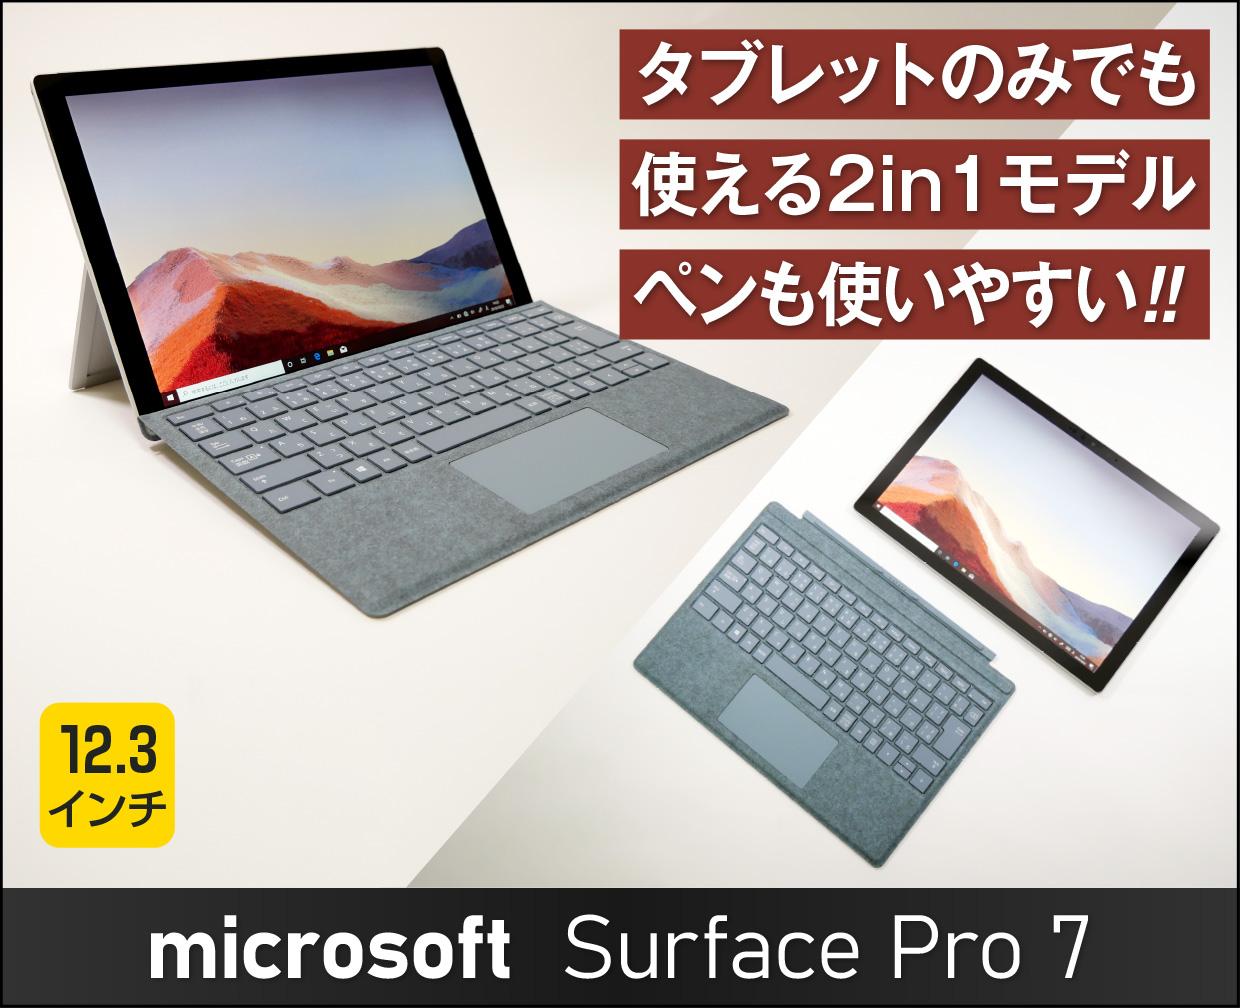 Surface Pro 7の実機レビュー 注意点も正直にレビュー ペンの使い心地 プロイラストレーターの評価は これがおすすめノートパソコン